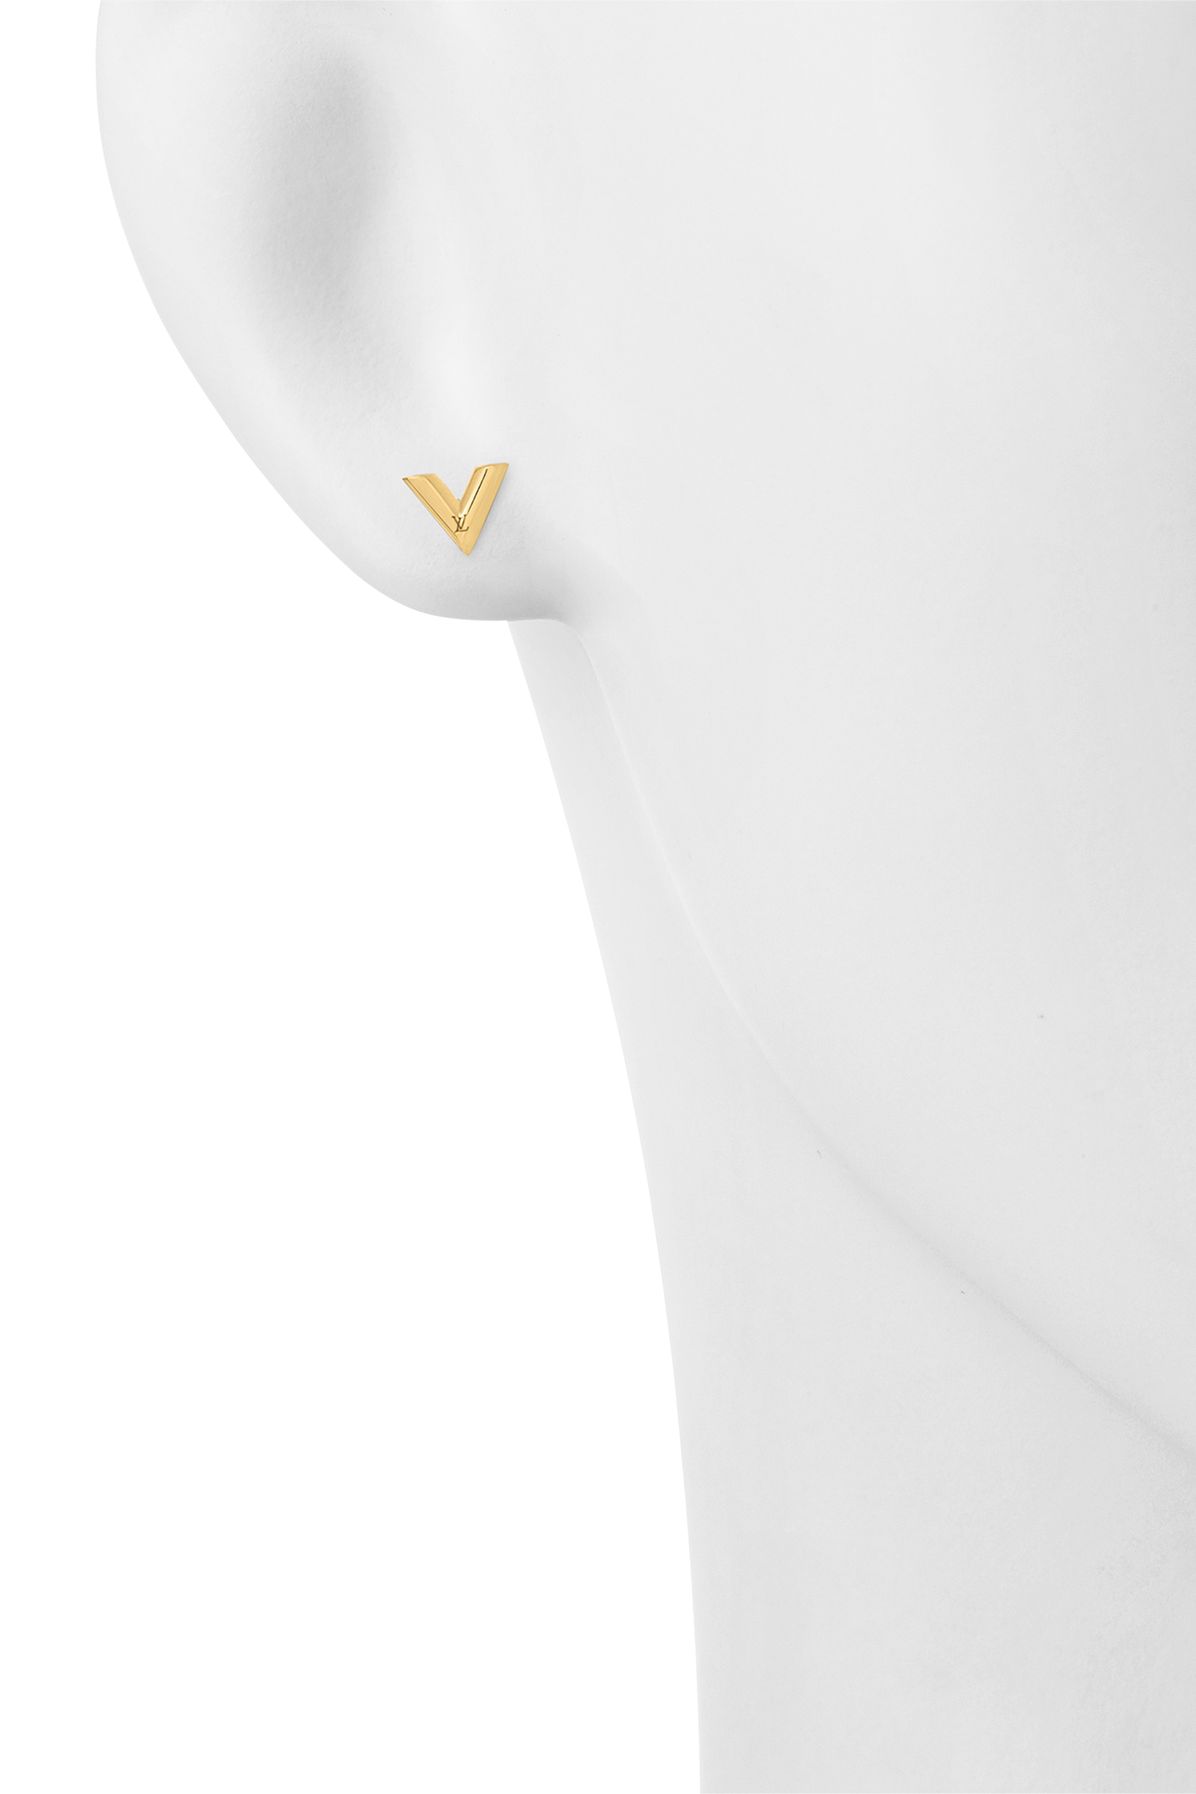  Essential V Skin Earrings